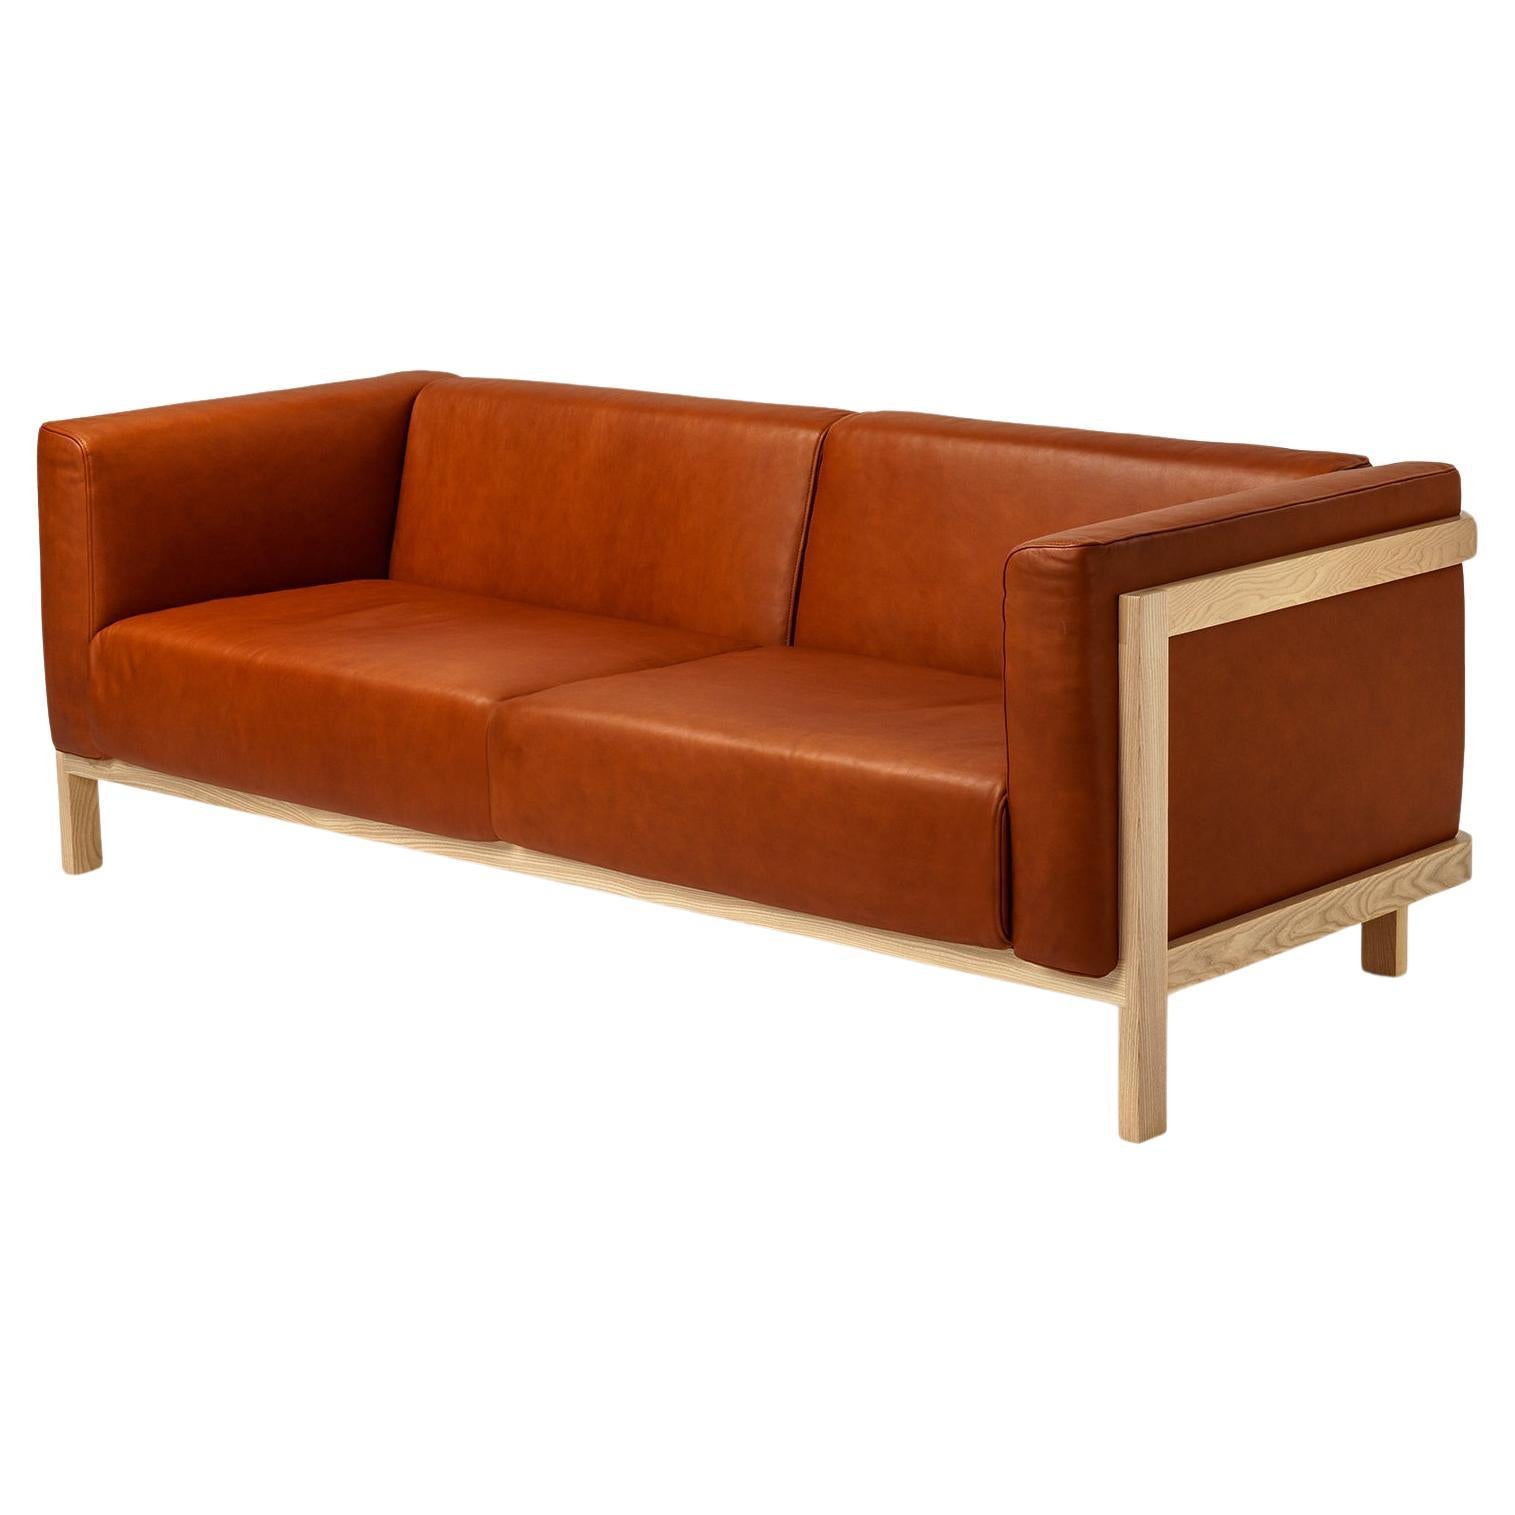 Minimalist three seater sofa ash - leather upholstered